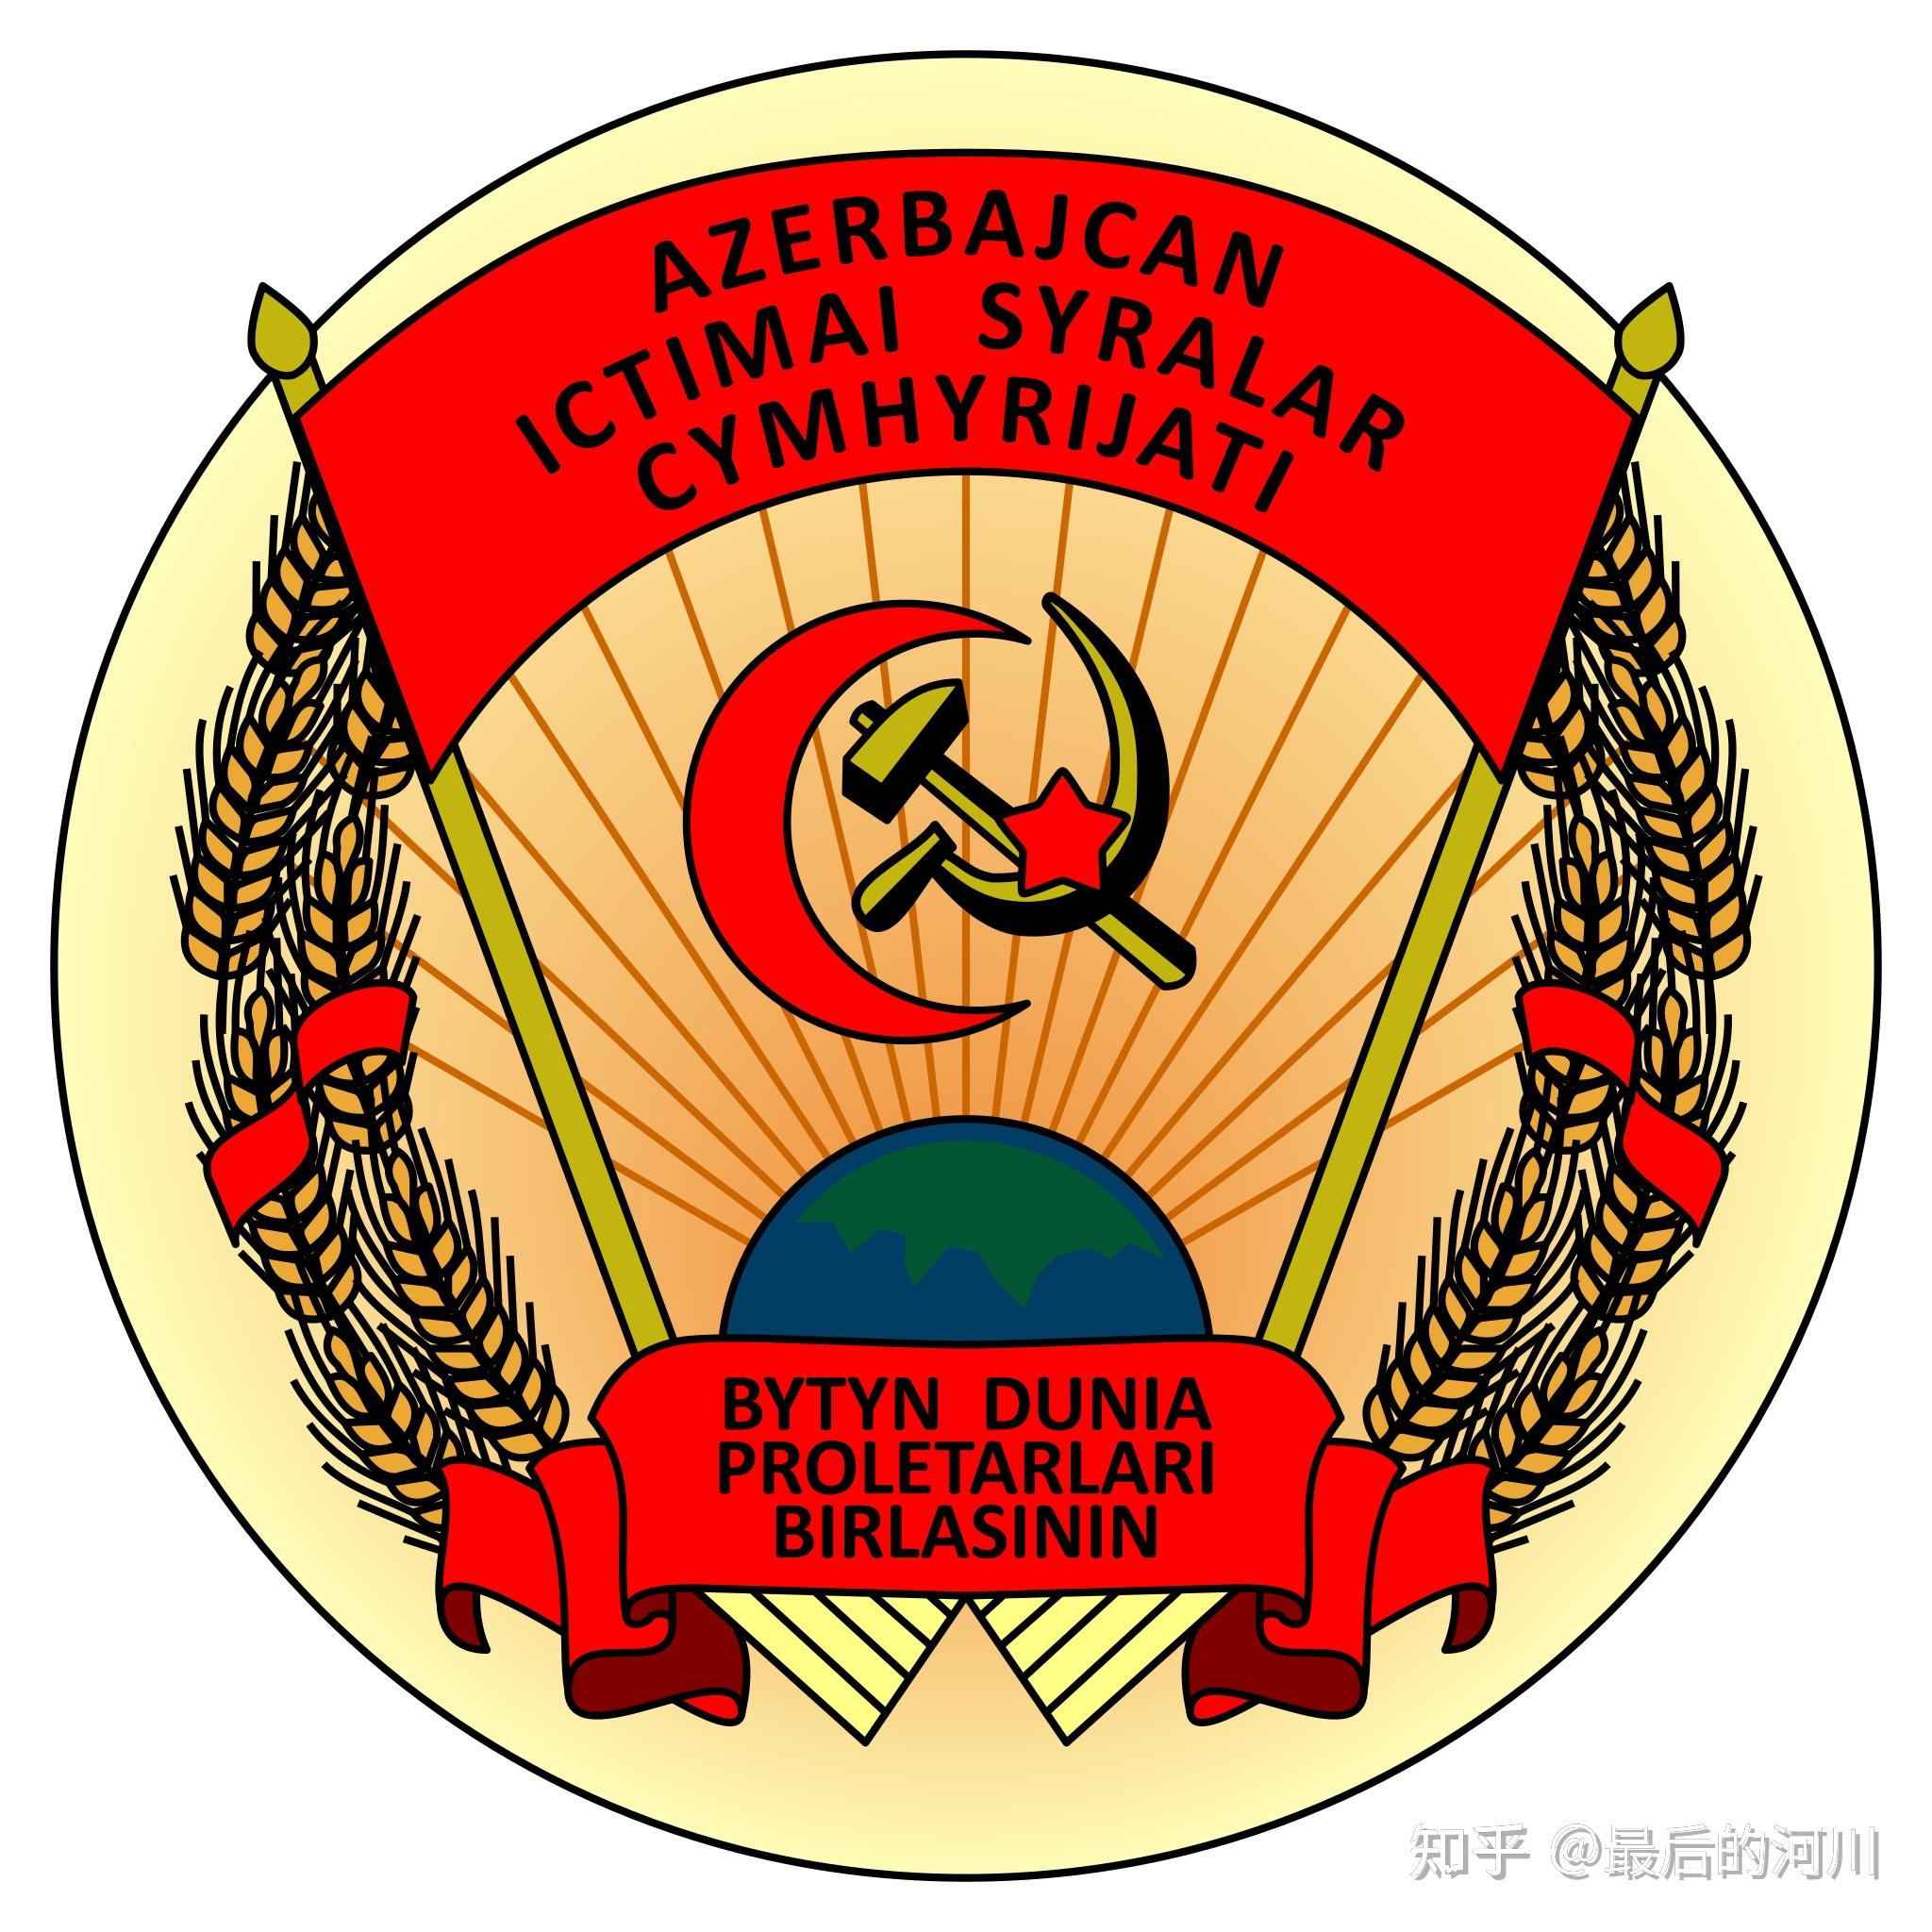 1920年5月3日,布尔什维克的力量开始在整个阿塞拜疆扩散.